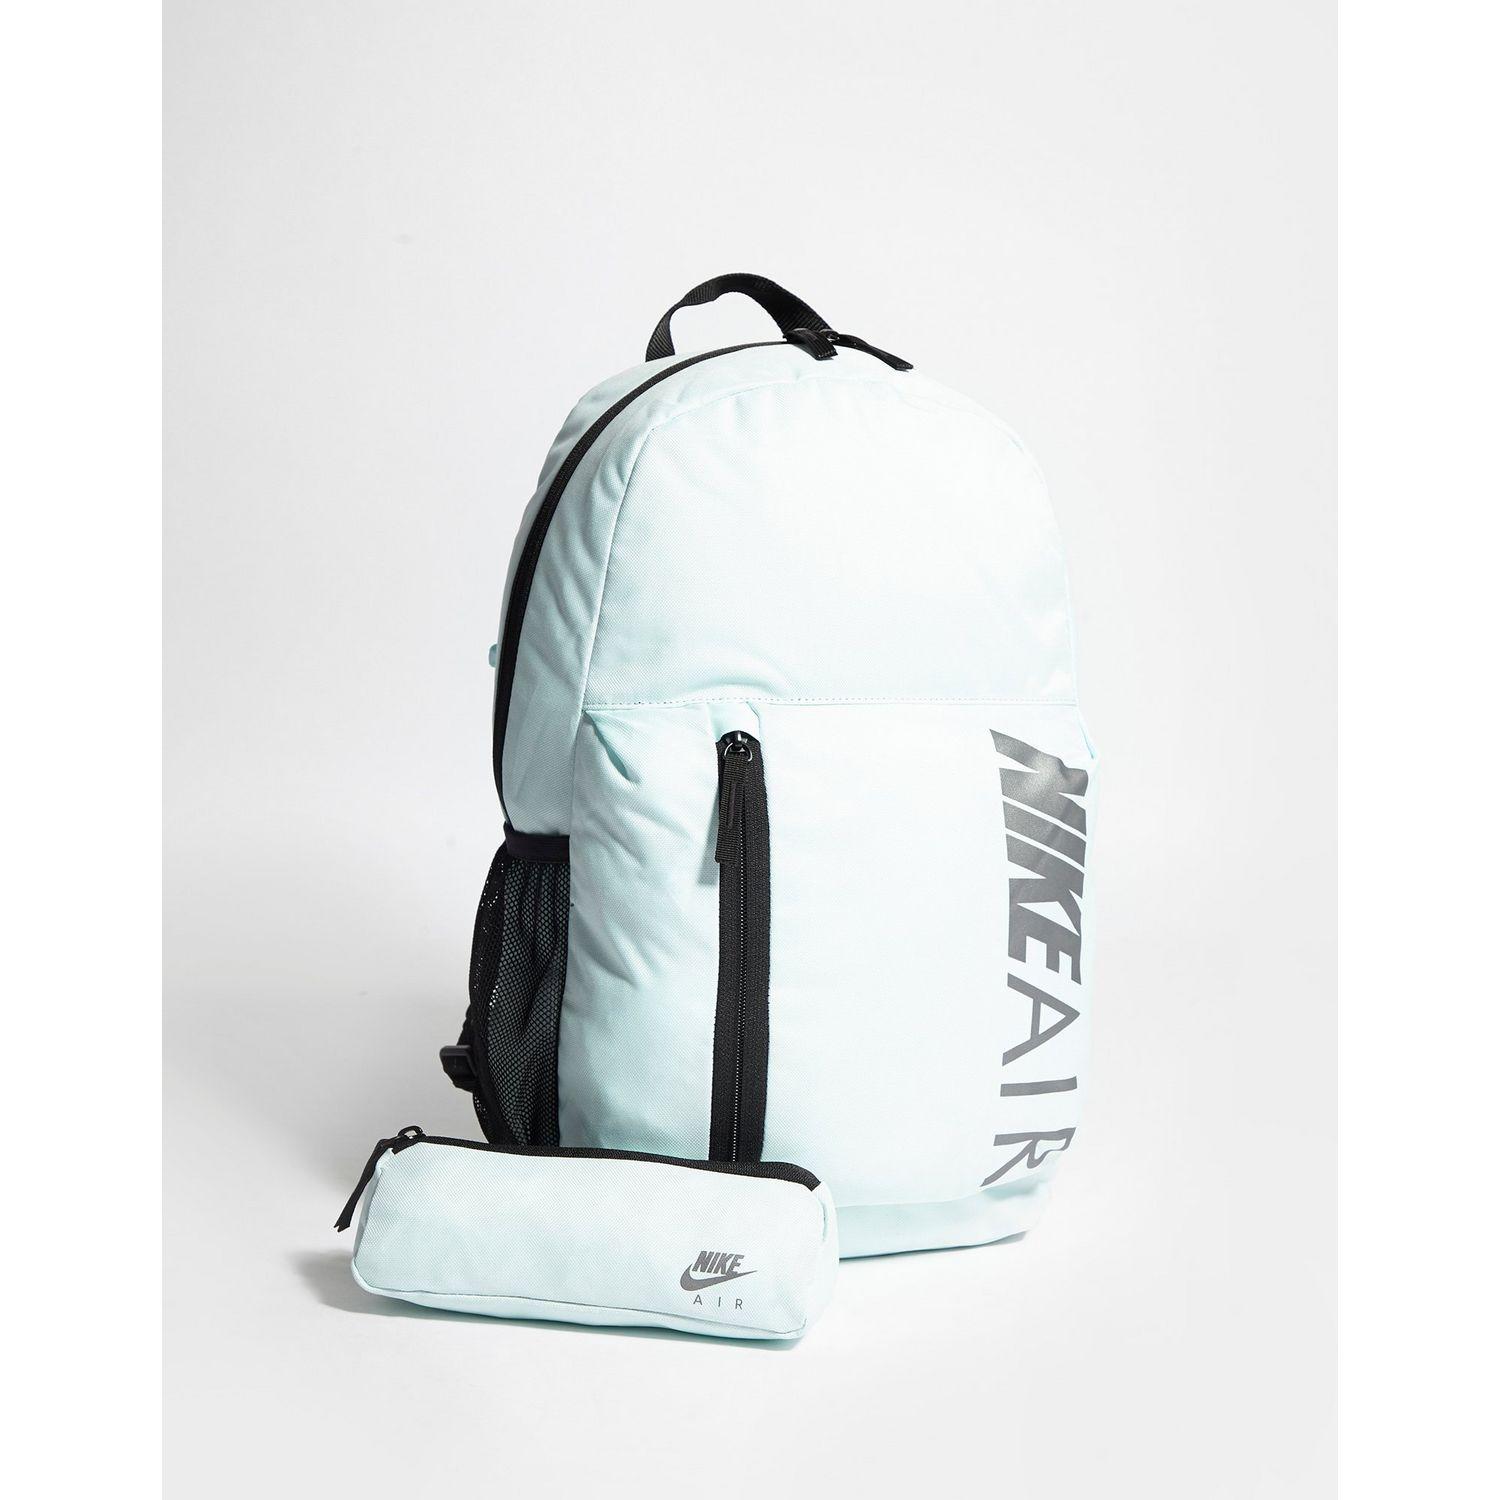 grey nike air backpack